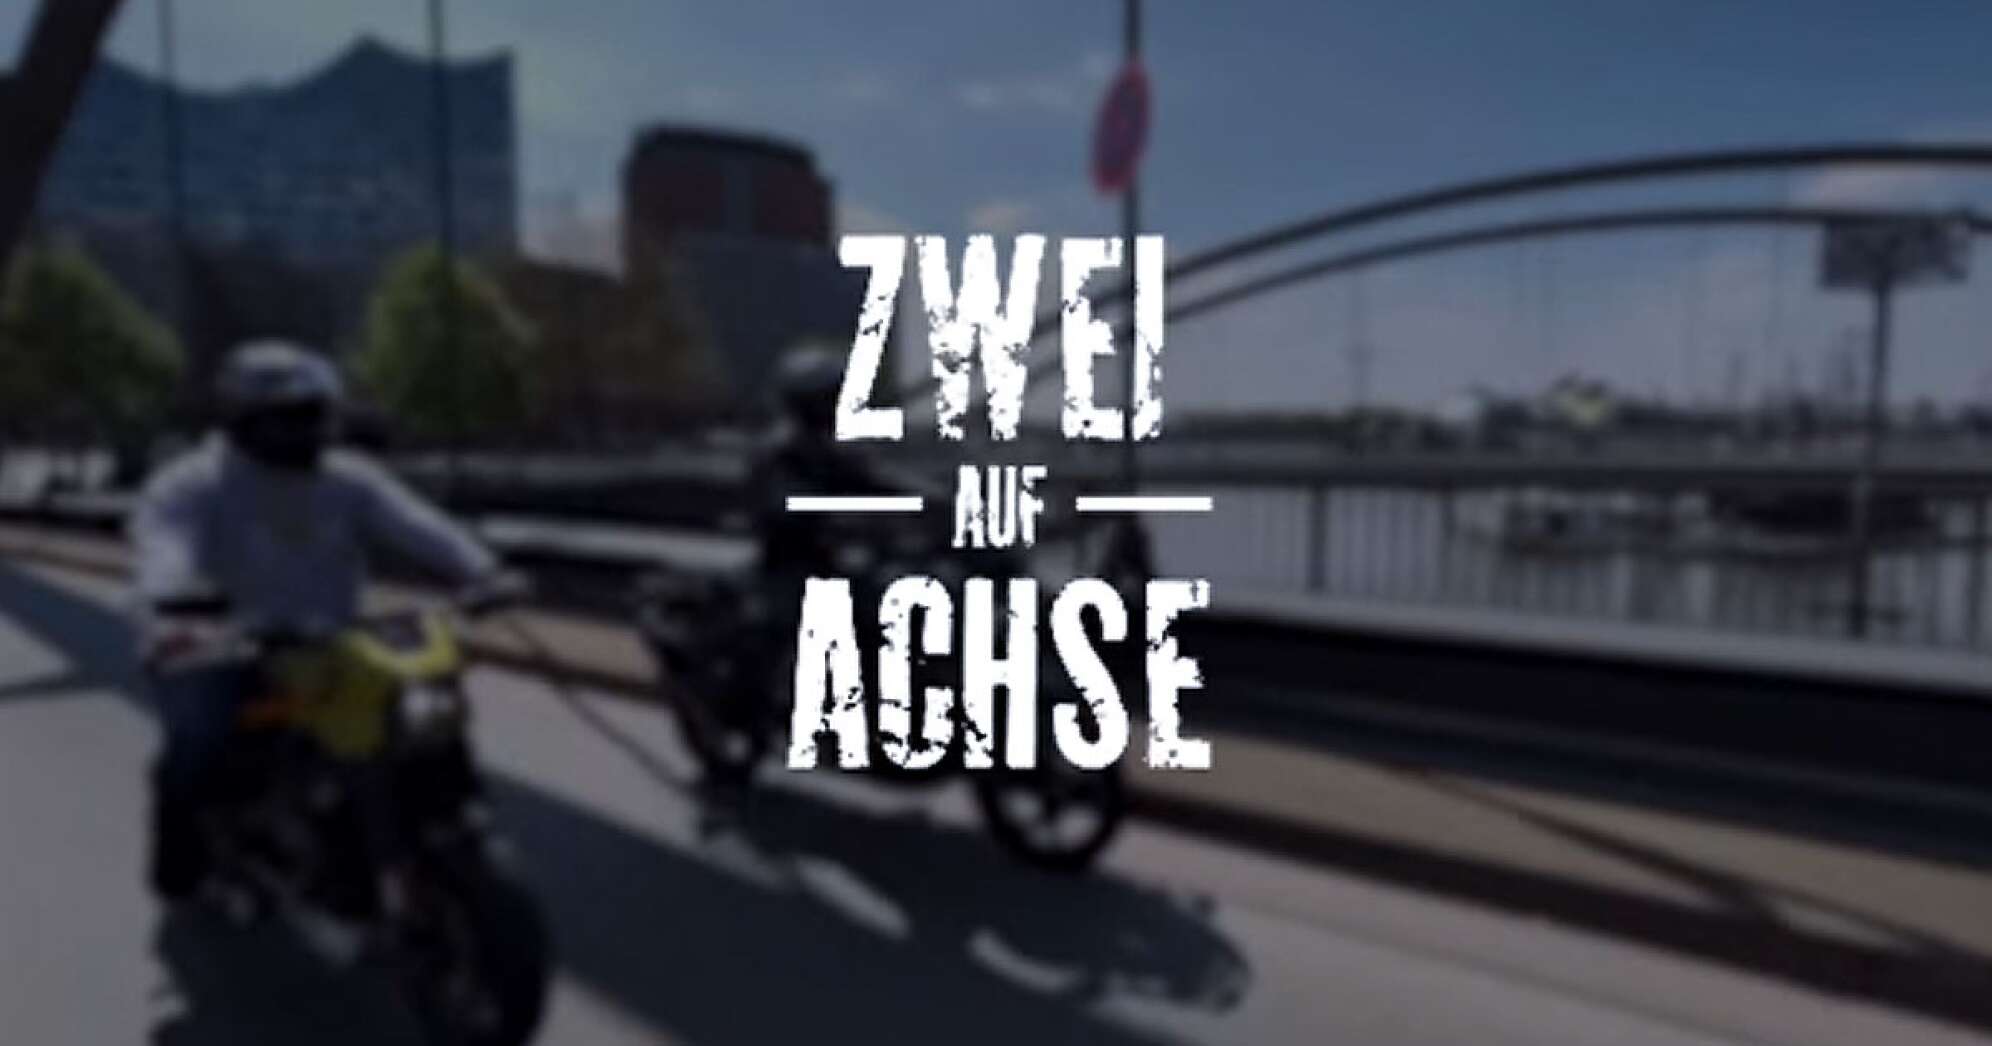 das Titelbild des Video Blogs "Zwei auf Achse" - zwei Motorradfahrer auf einer Brücke in der Speicherstadt vor der Kulisse des Hamburger Hafens mit der Elbphilharmonie